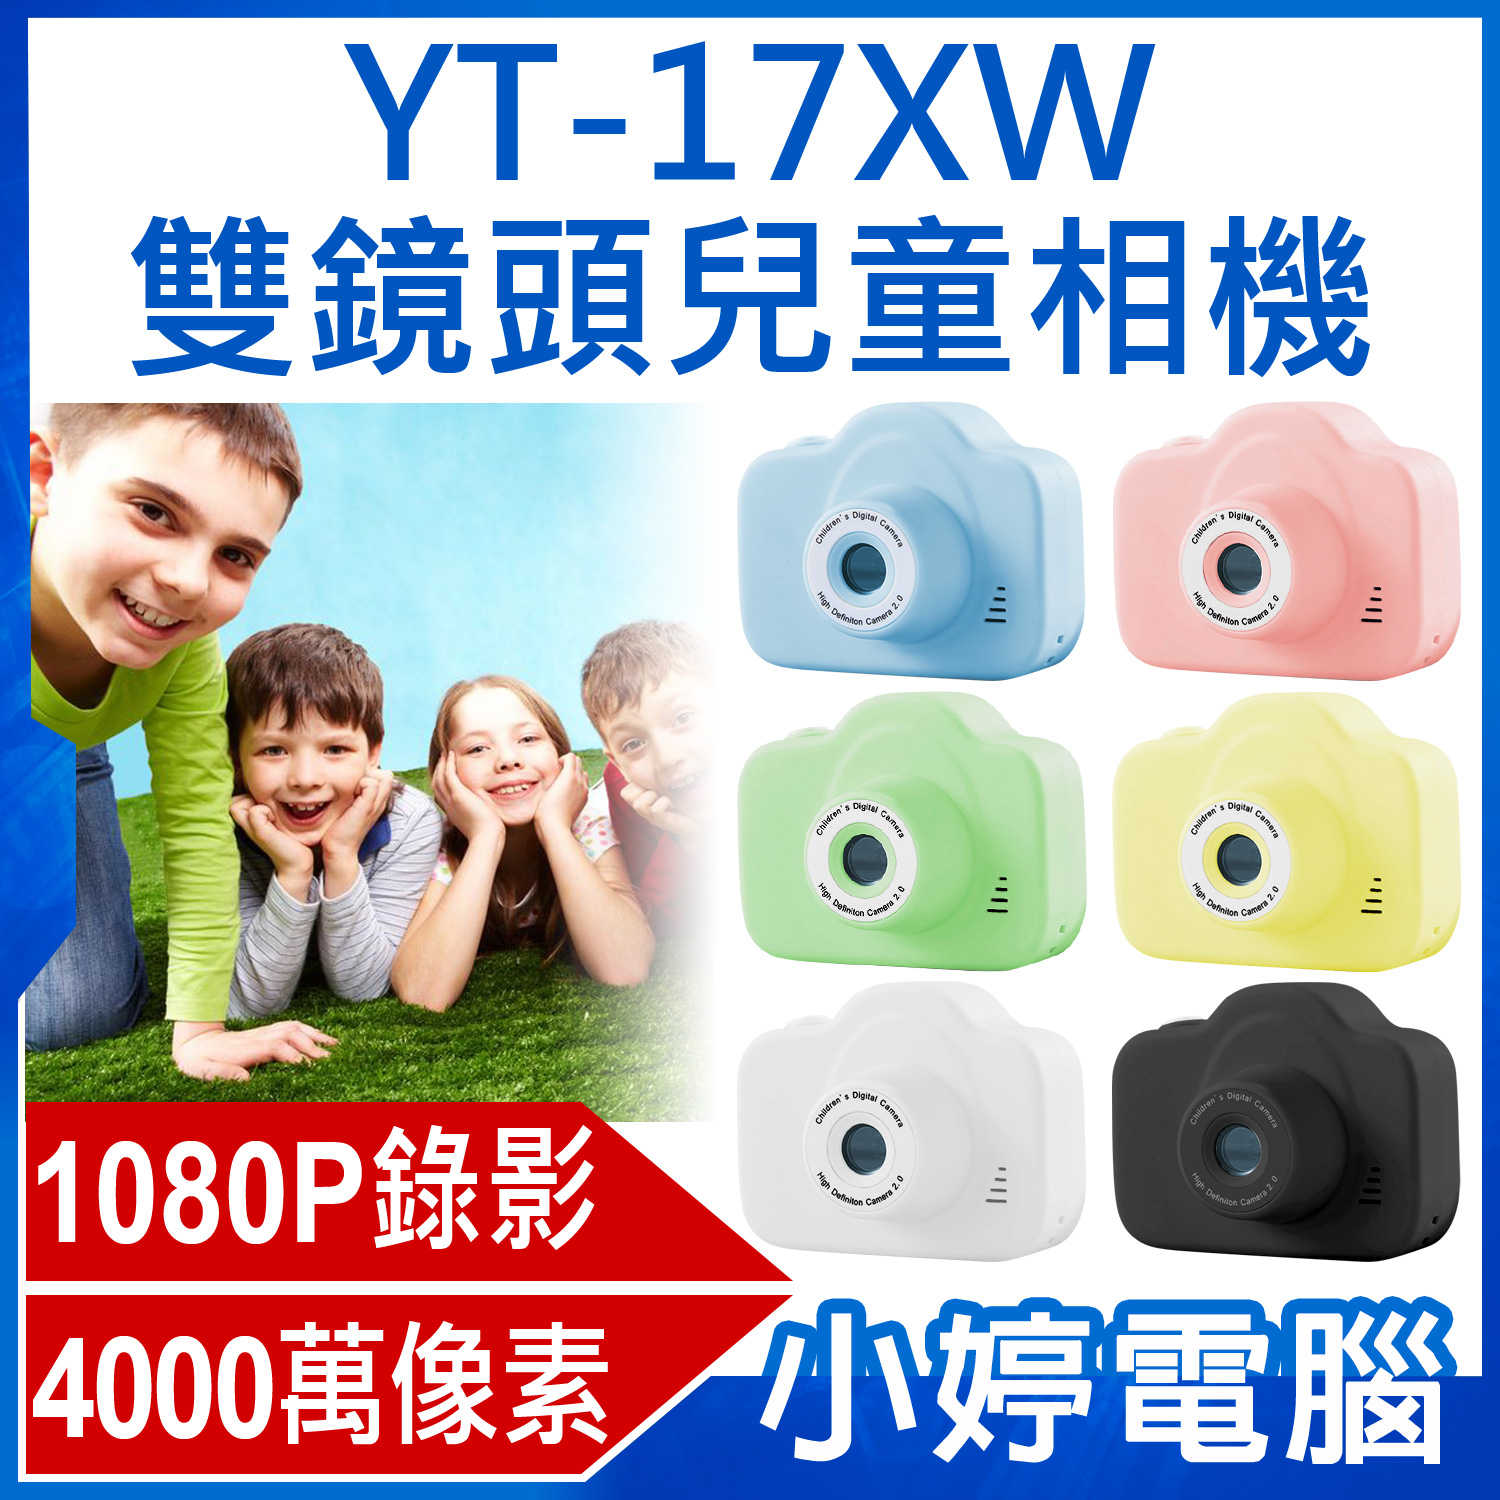 【小婷電腦】YT-17XW雙鏡頭兒童相機 1080P錄影高畫質 8000萬像素 錄影/照相 可愛邊框